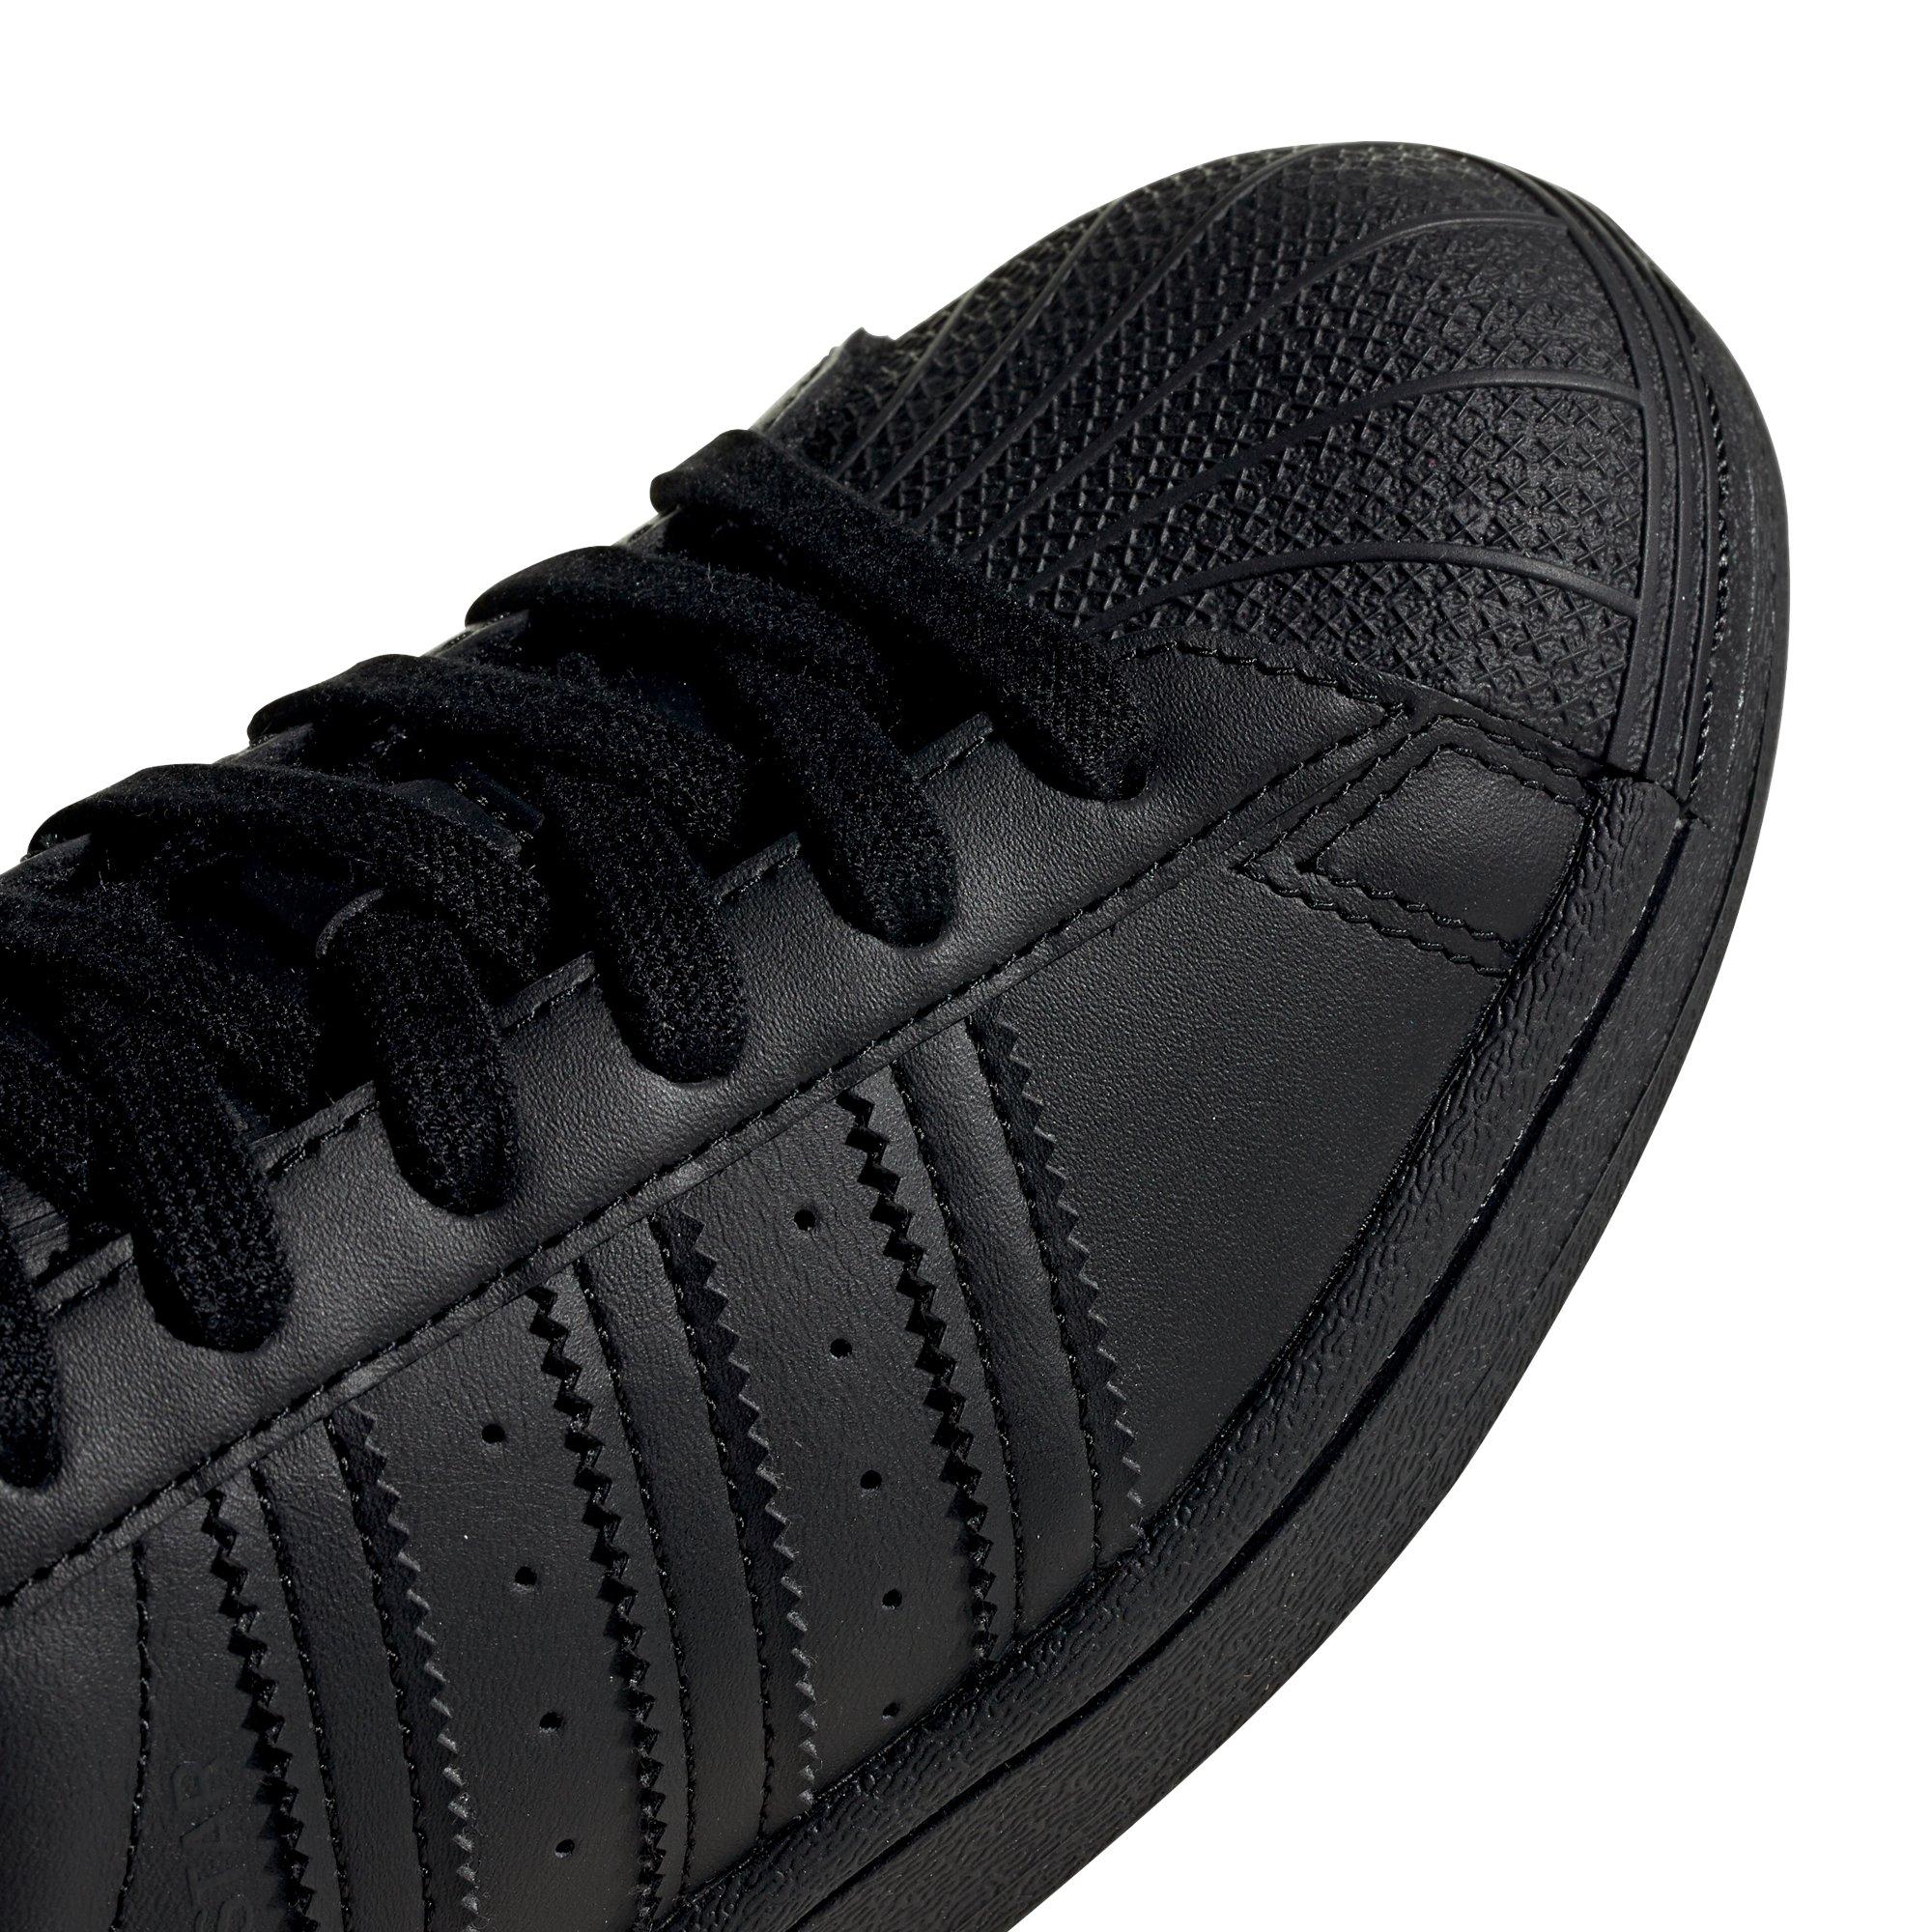  Black Shell Toe Adidas